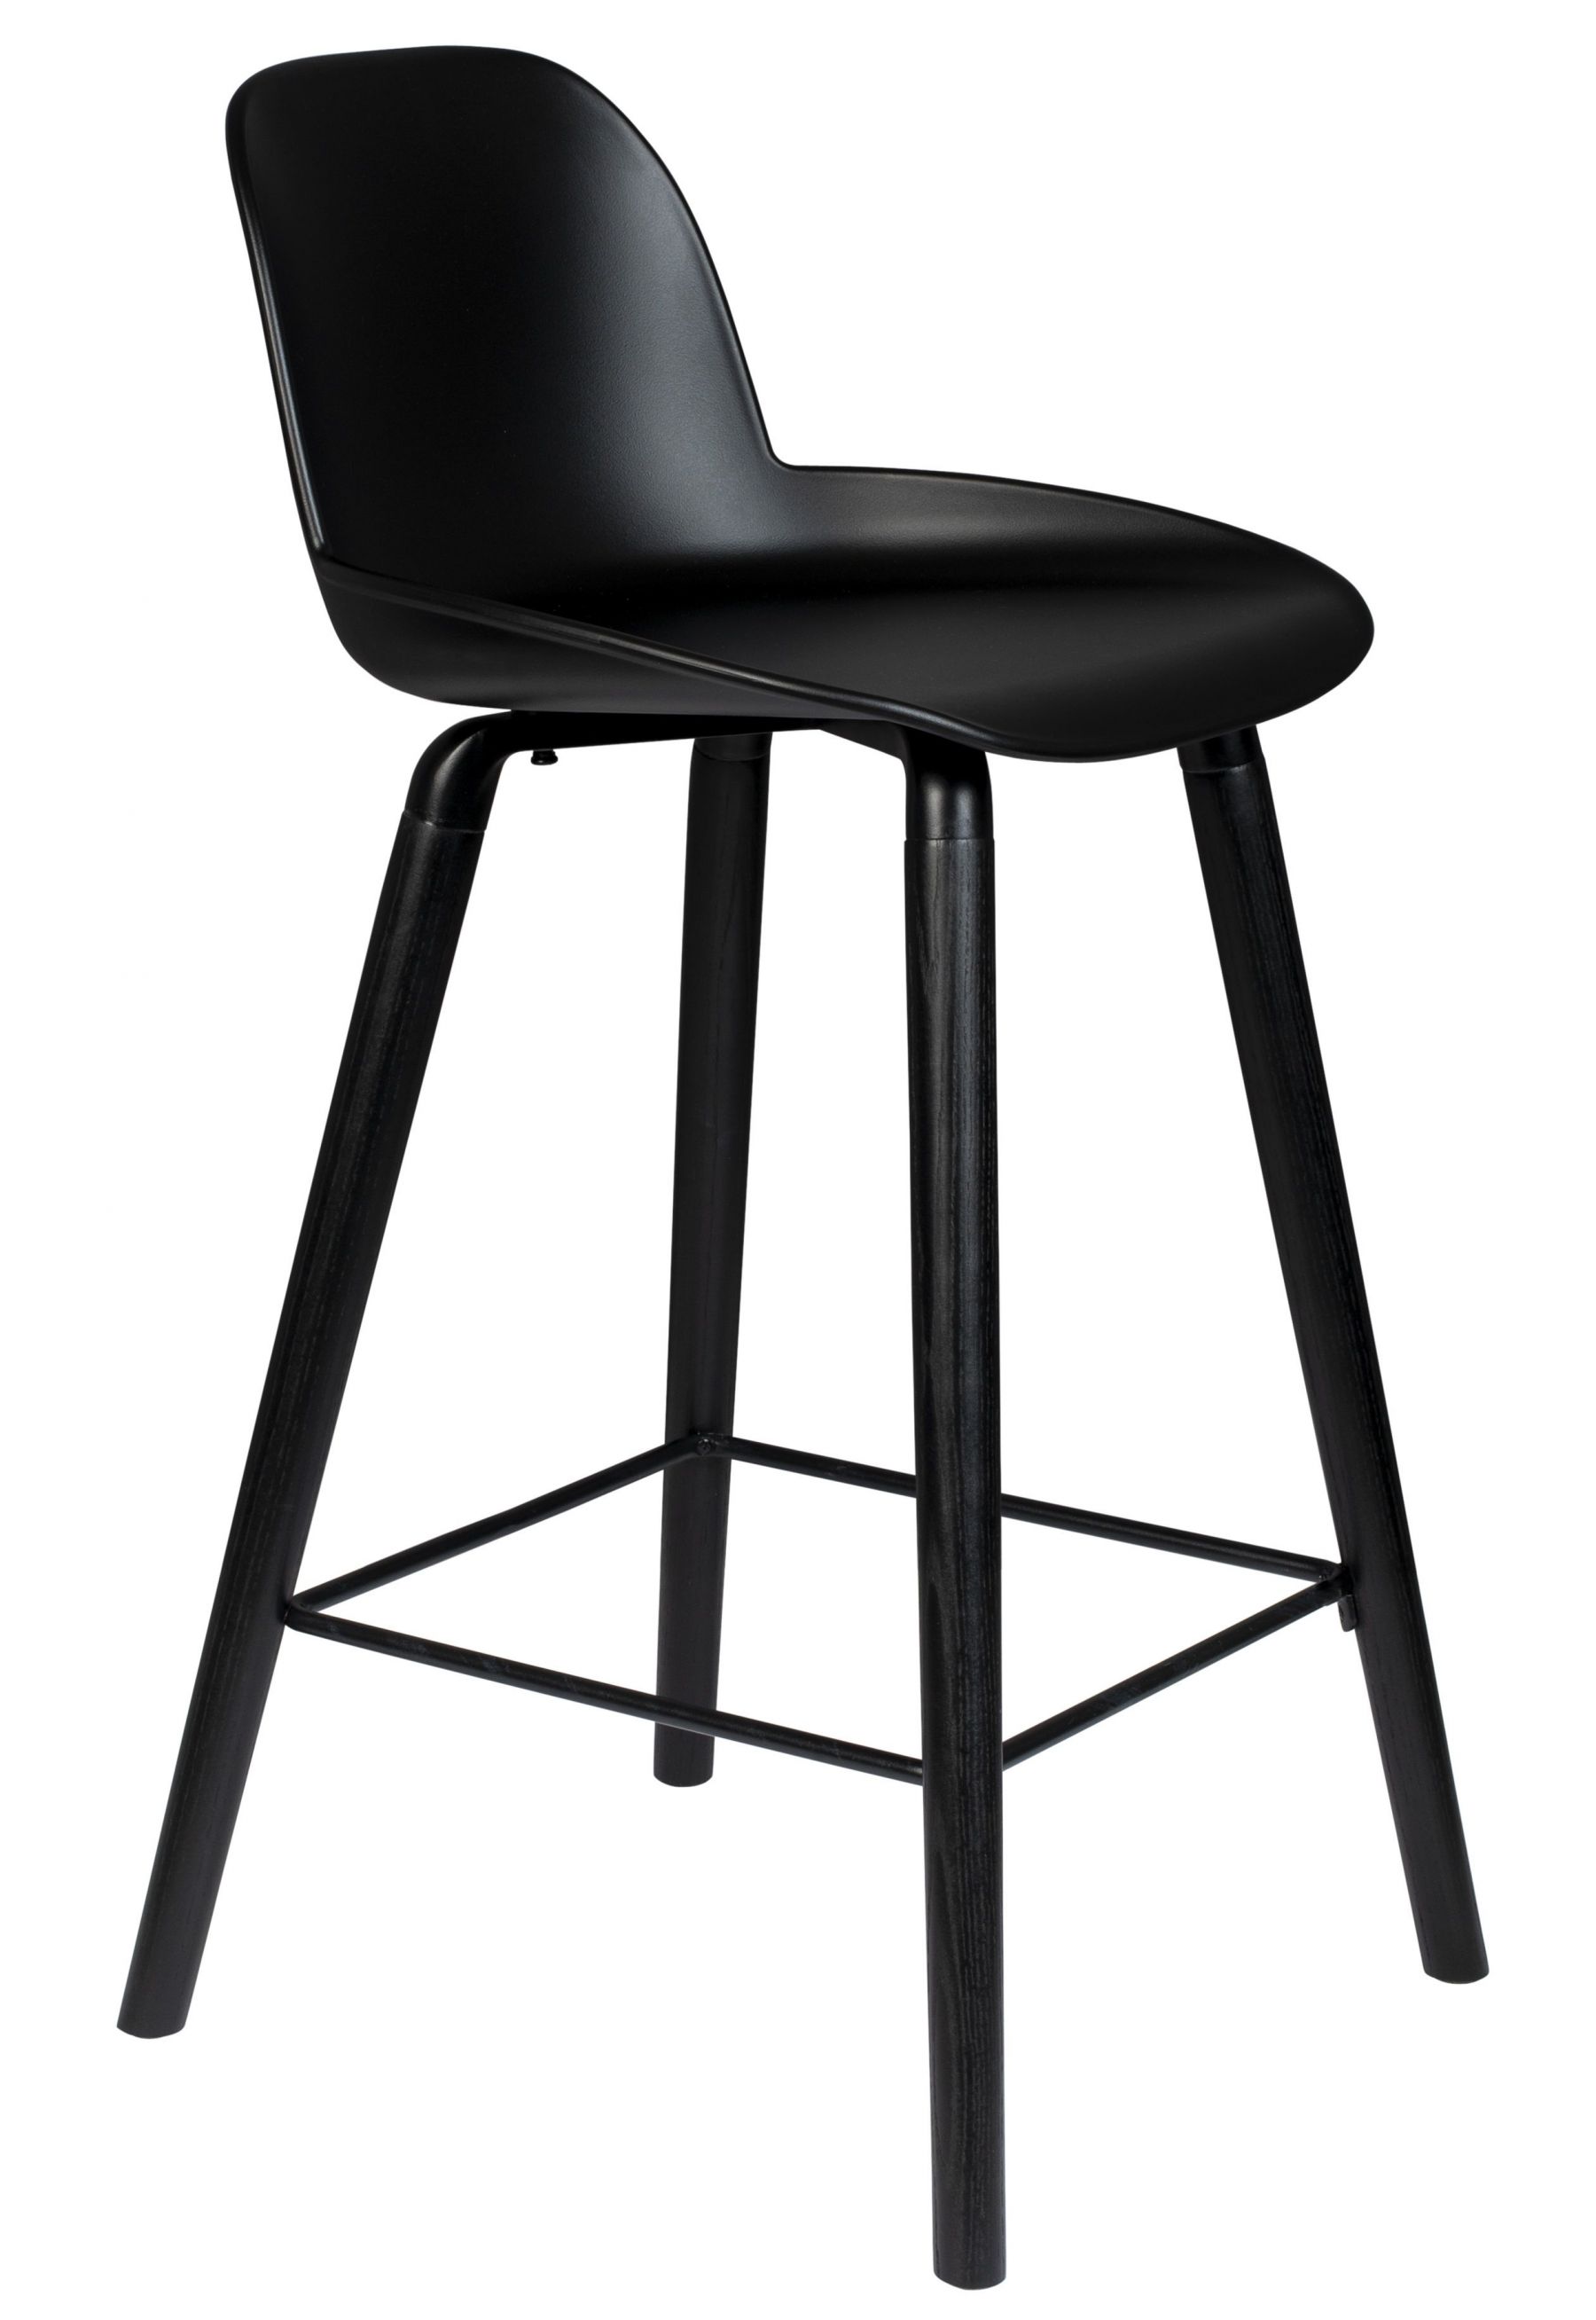 Černá plastová barová židle ZUIVER ALBERT KUIP ALL BLACK 66 cm - Designovynabytek.cz